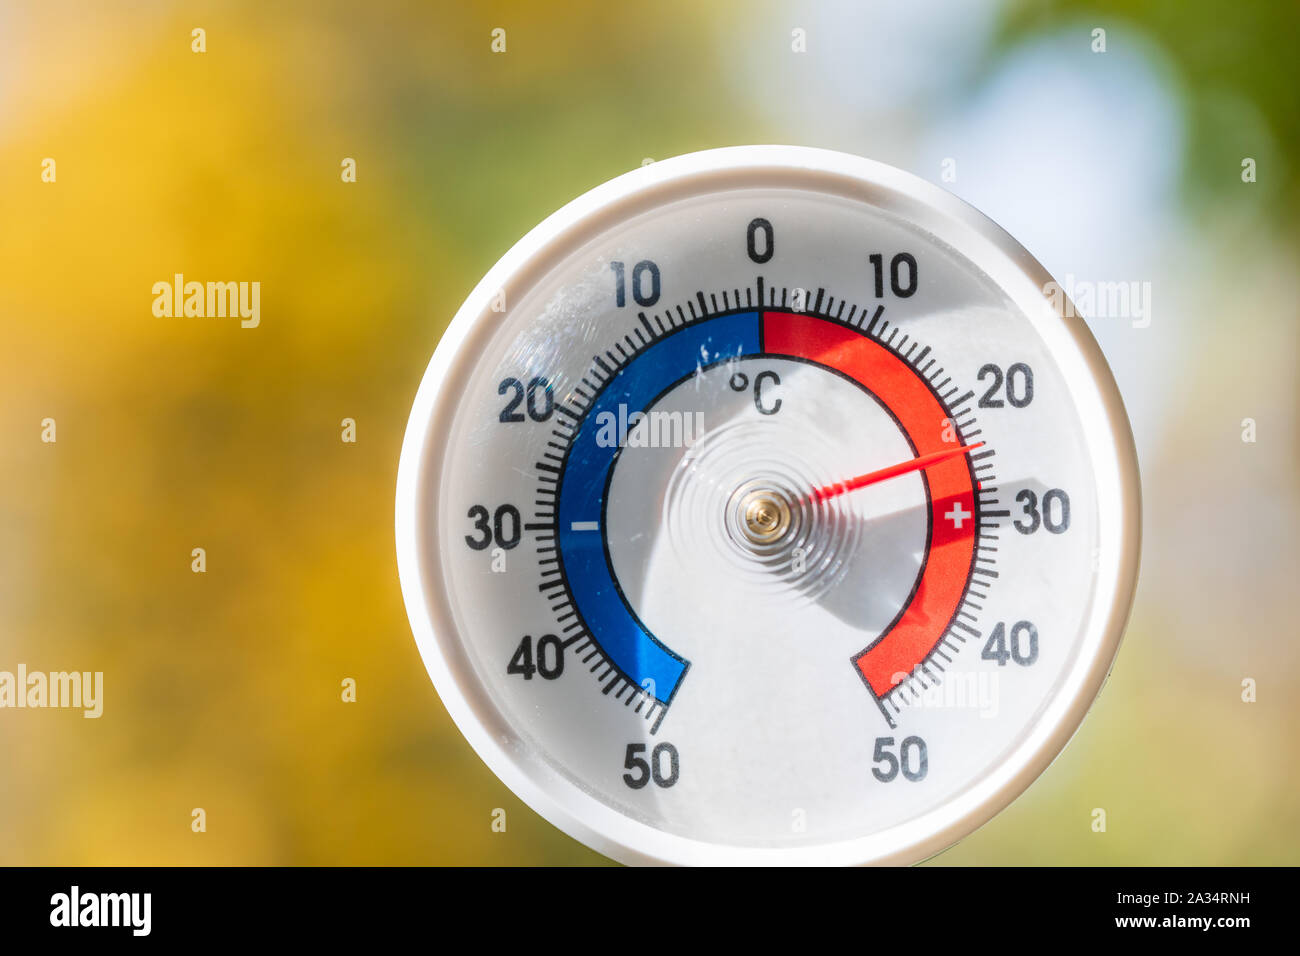 Termometro da esterno con scala Celsius che mostra la temperatura calda, offuscata Foglie di autunno visto in background - calda estate indiana o il riscaldamento globale concep Foto Stock